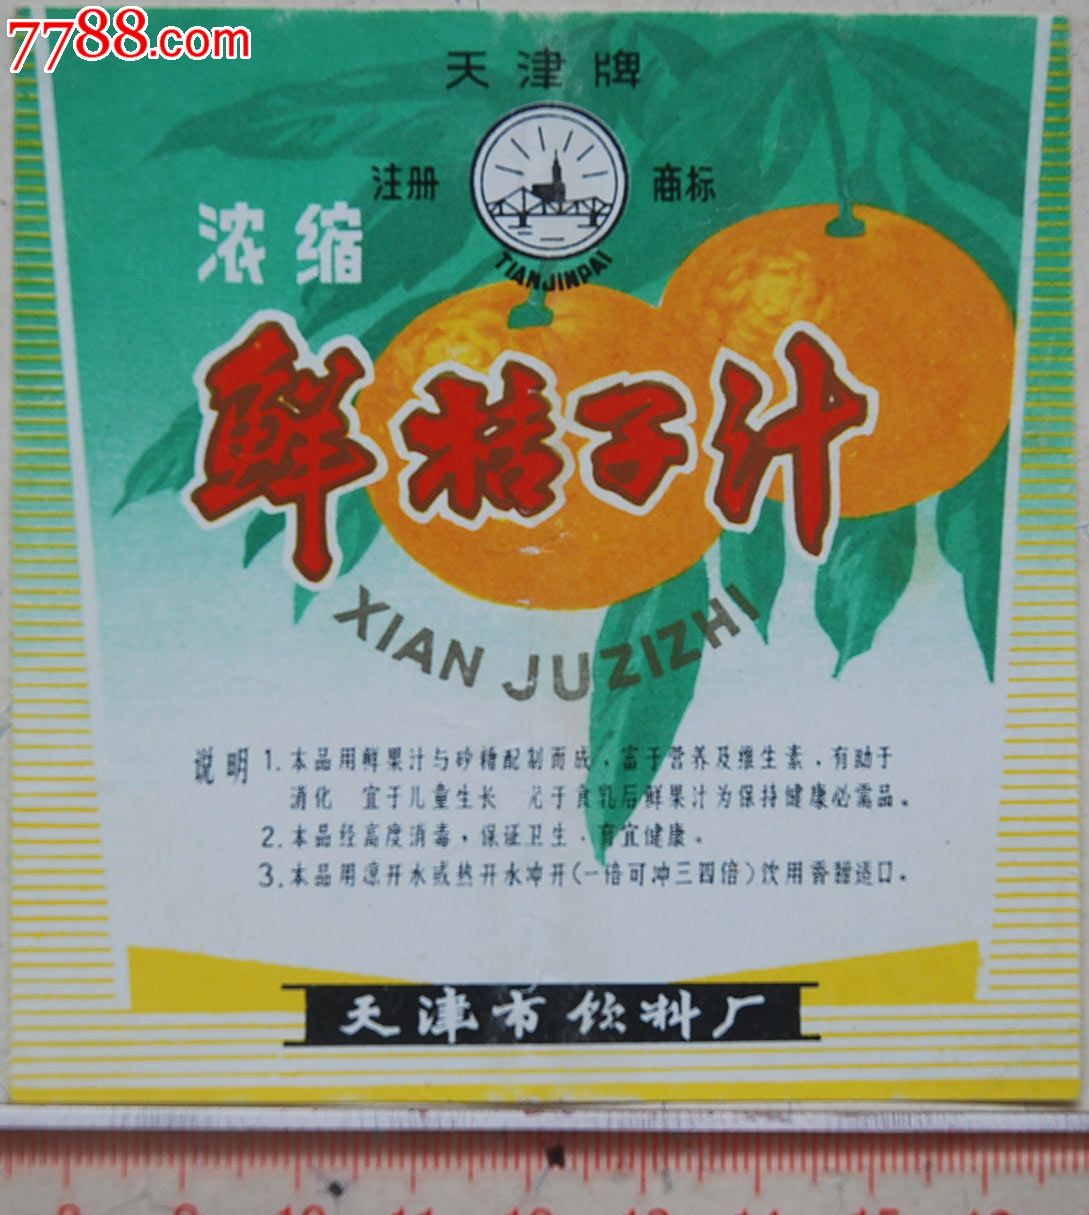 天津市饮料厂天津牌浓缩鲜桔子汁